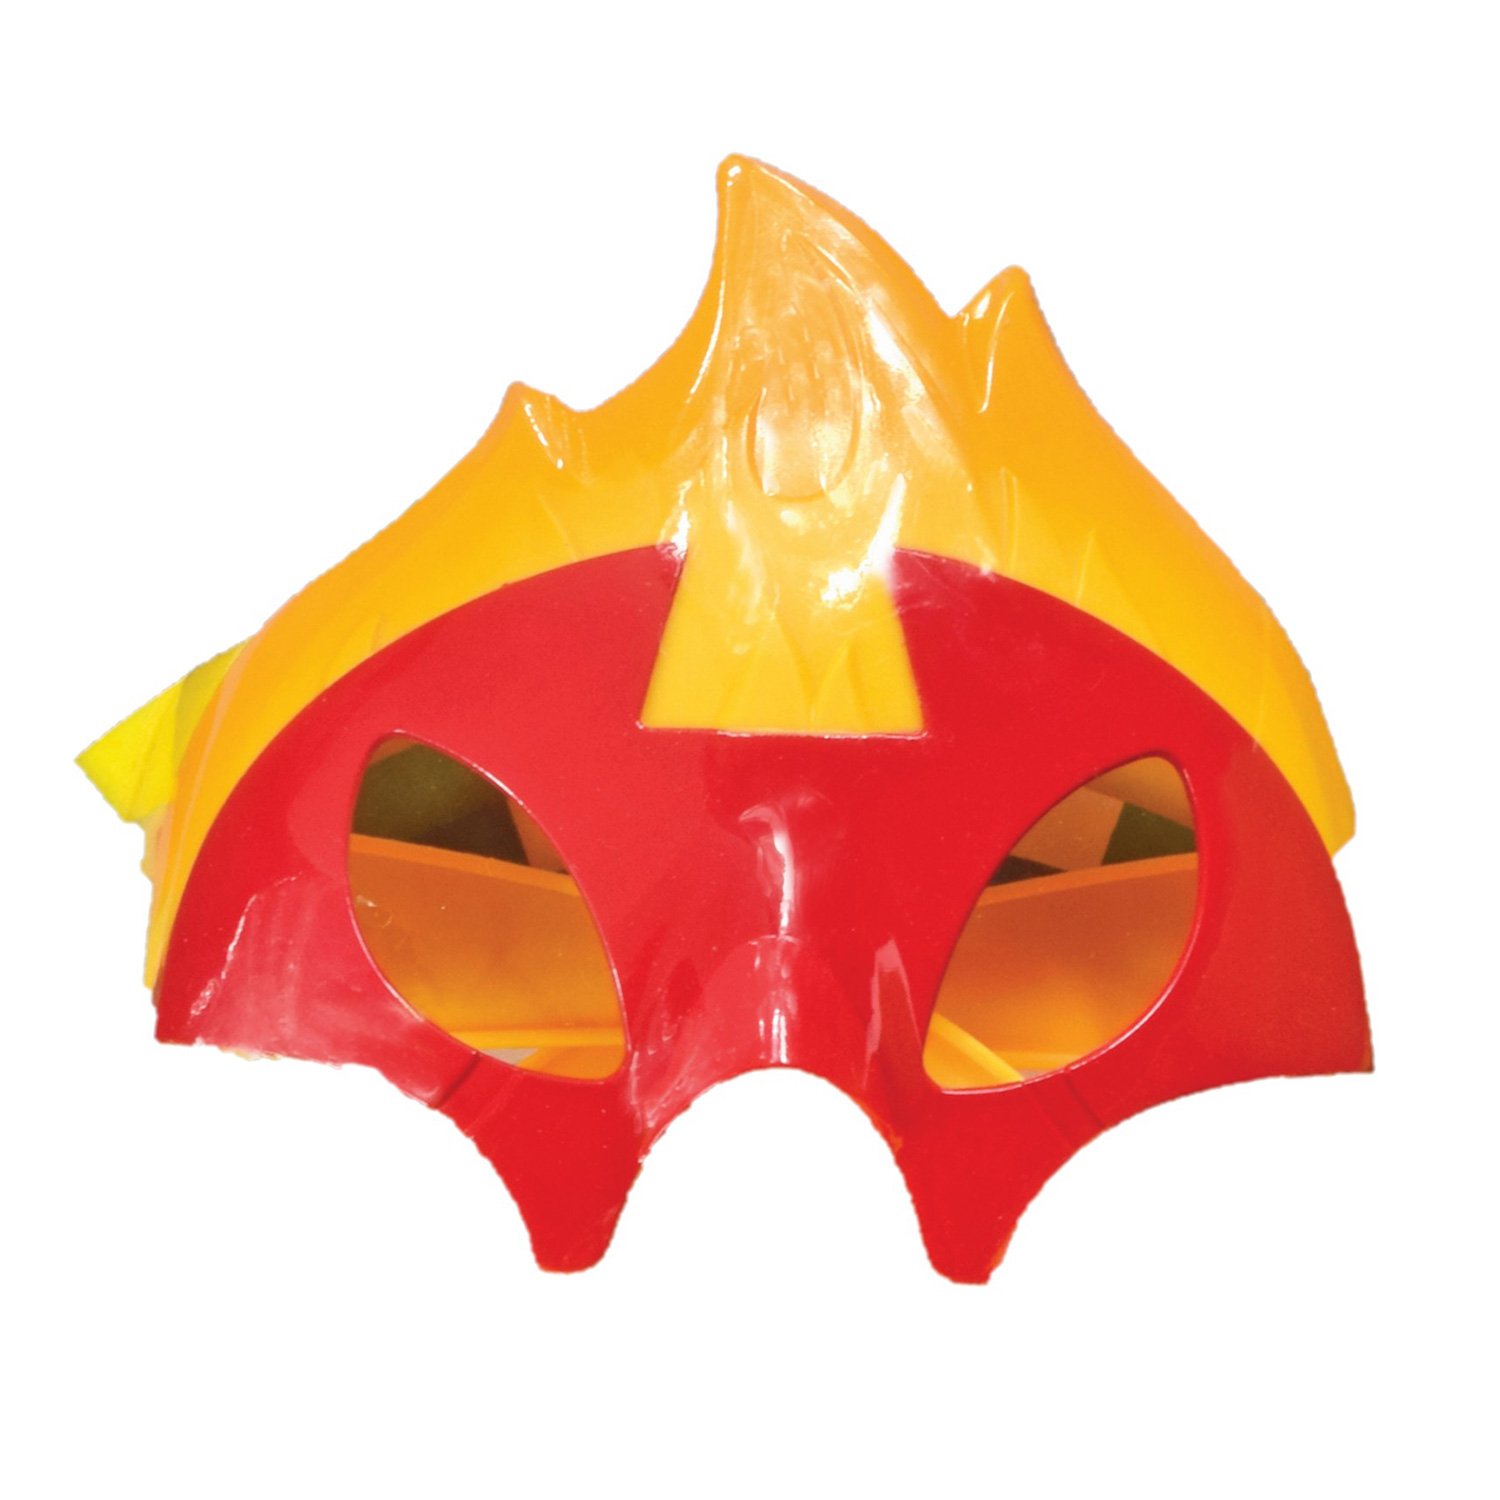 Набор игровой Ben10 Фигурка Человека огня XL + маска для ребенка 76712